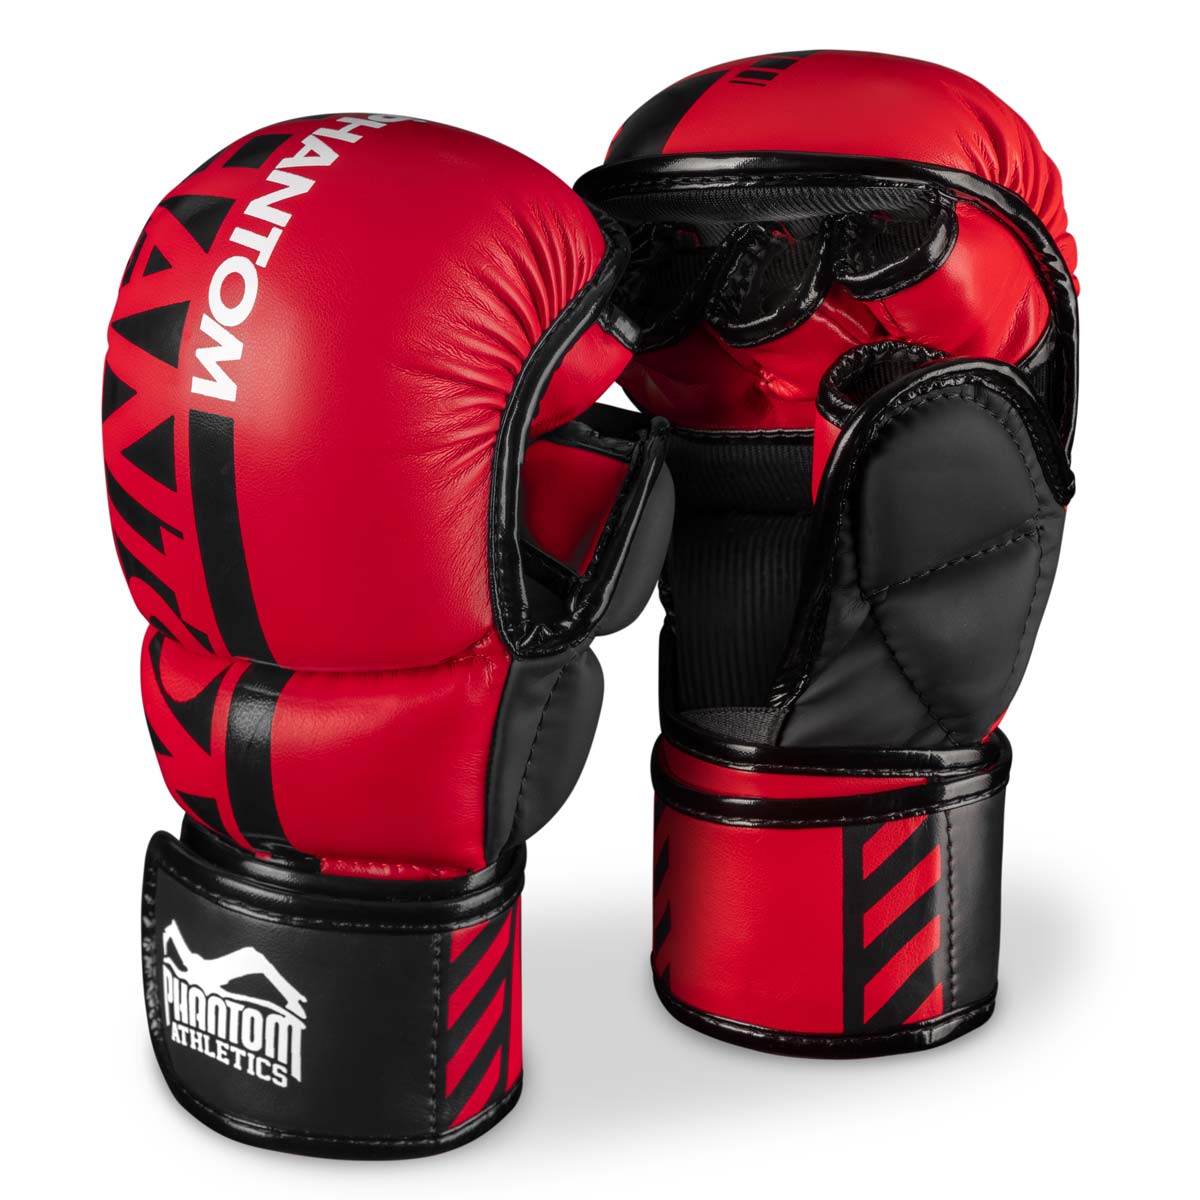 Les gants de sparring Phantom MMA. Le gant le plus sûr pour votre entraînement d'arts martiaux. Maintenant dans la couleur rouge limitée.